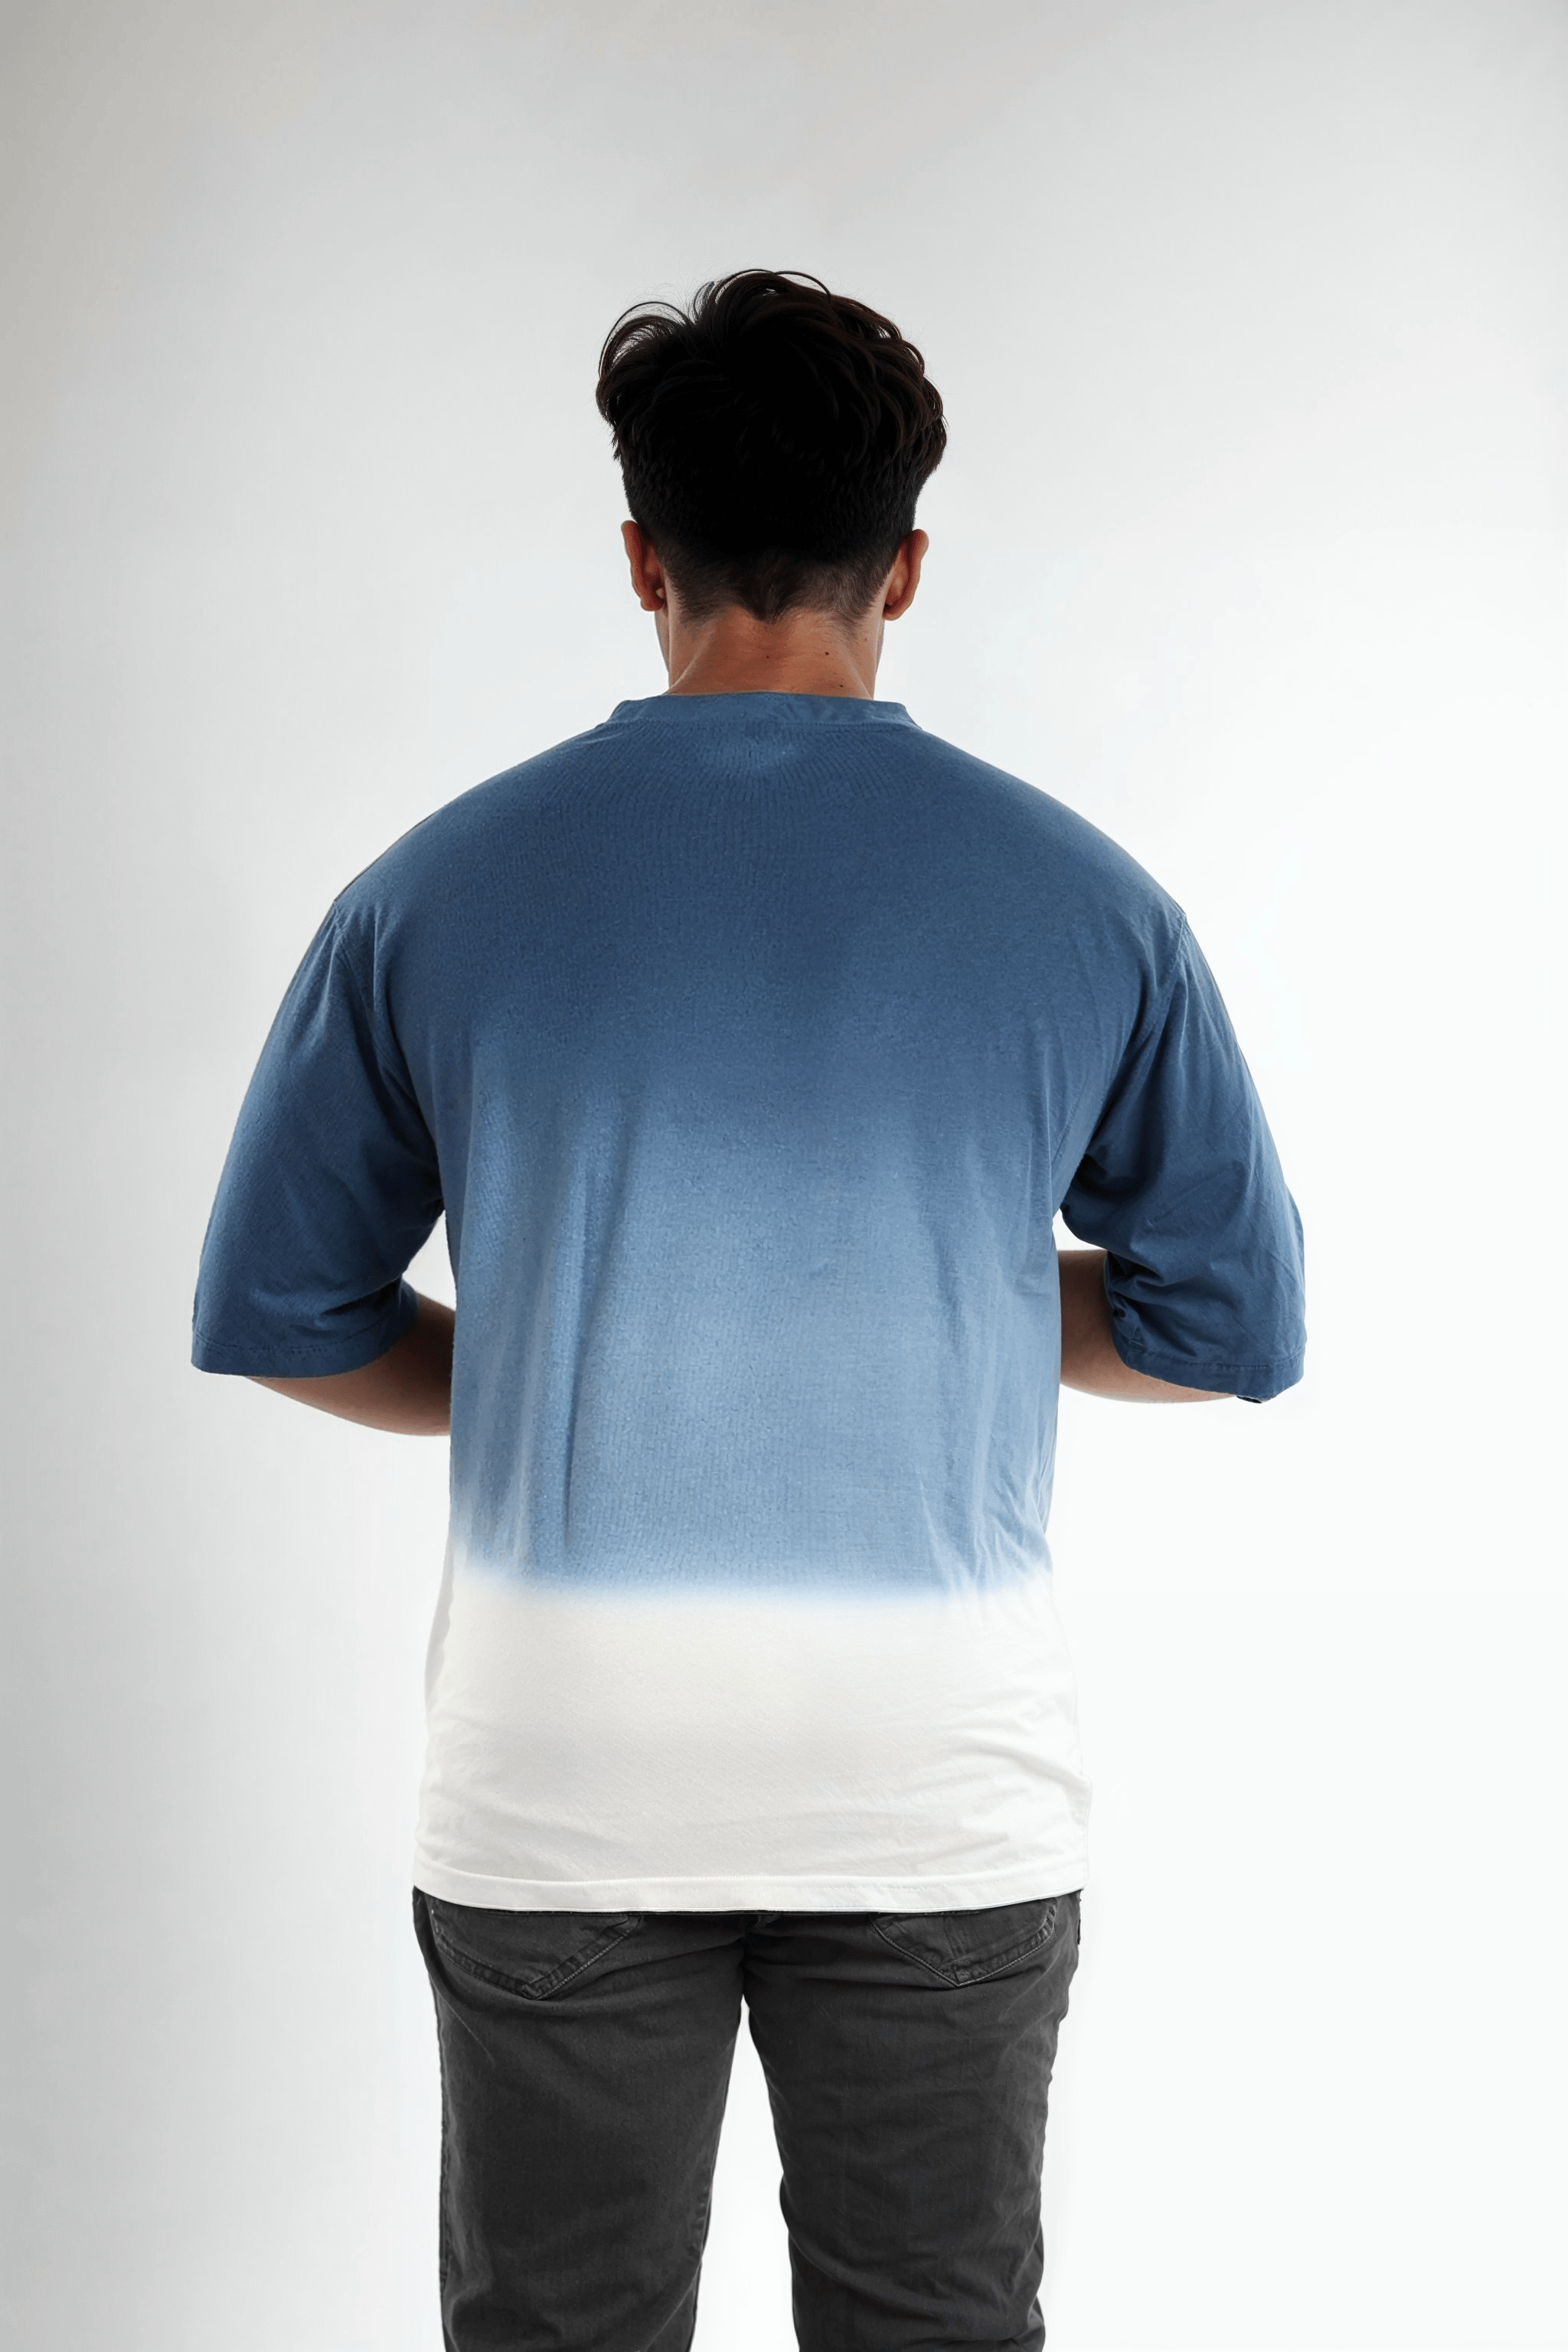 Naruto- Blue Printed Cotton T- Shirt (LJENARUIN)